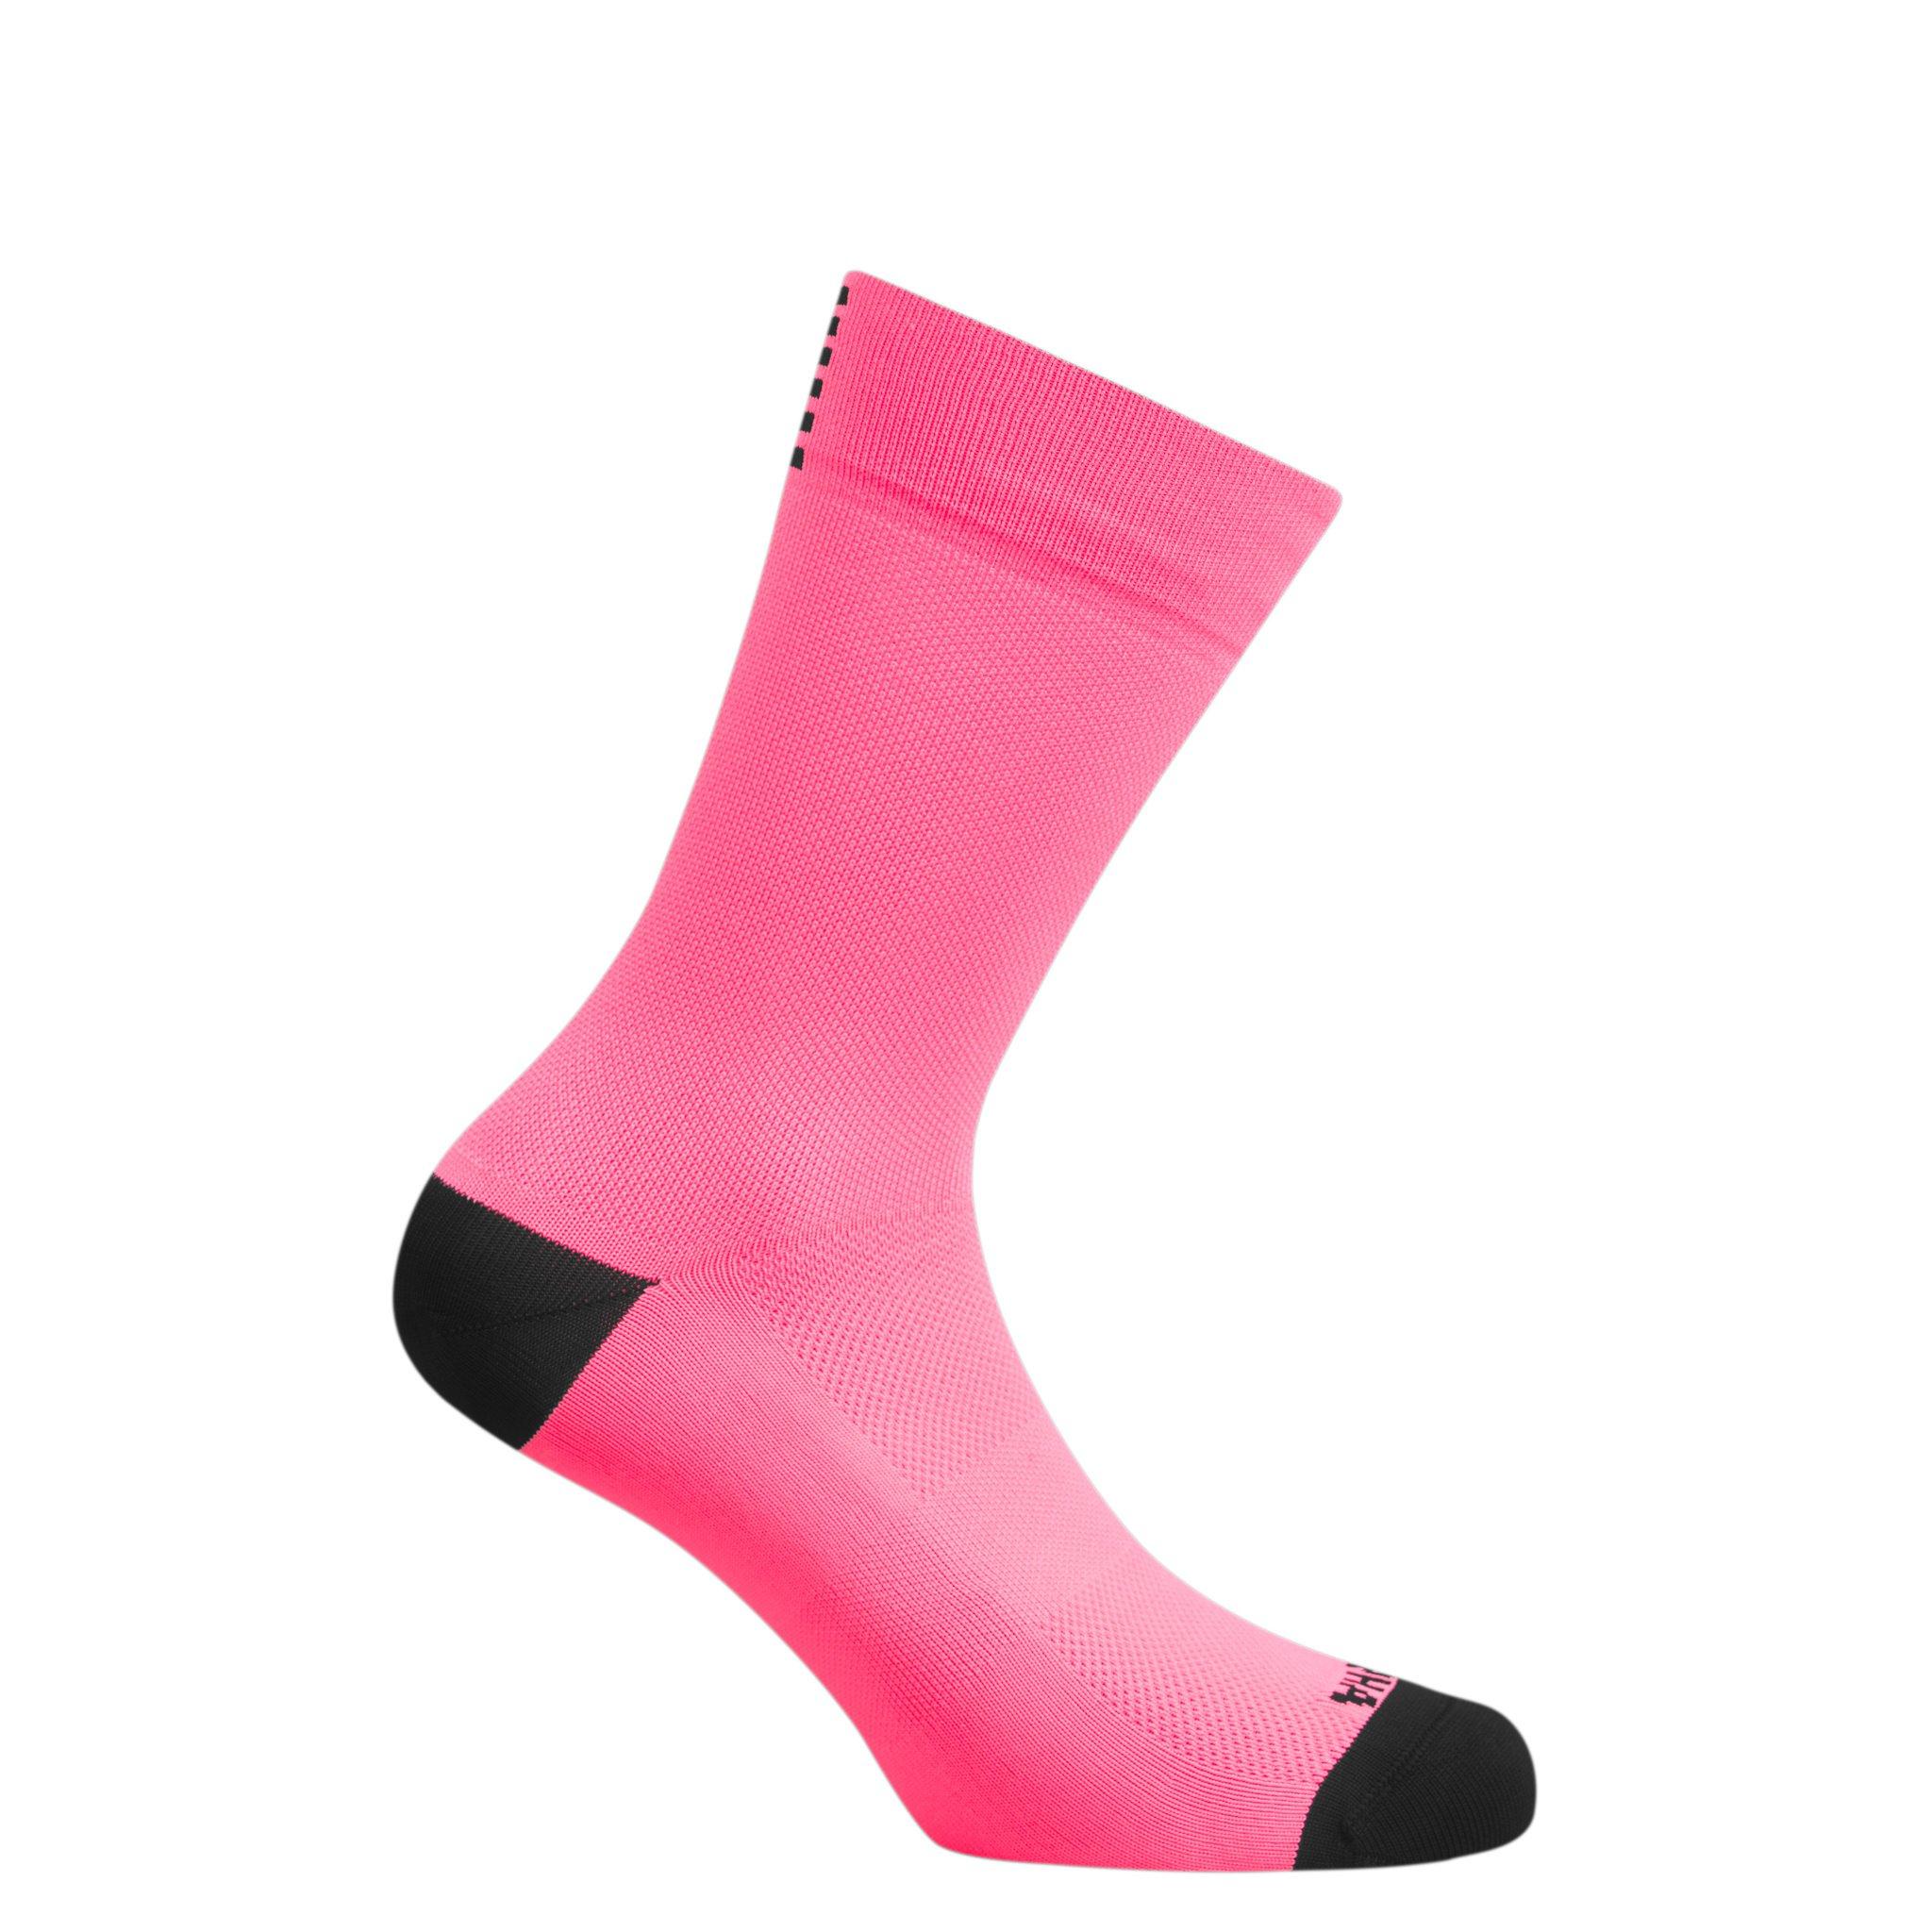 Men's Pro Team Socks - Regular | Rapha Race Fit Socks For Fair 